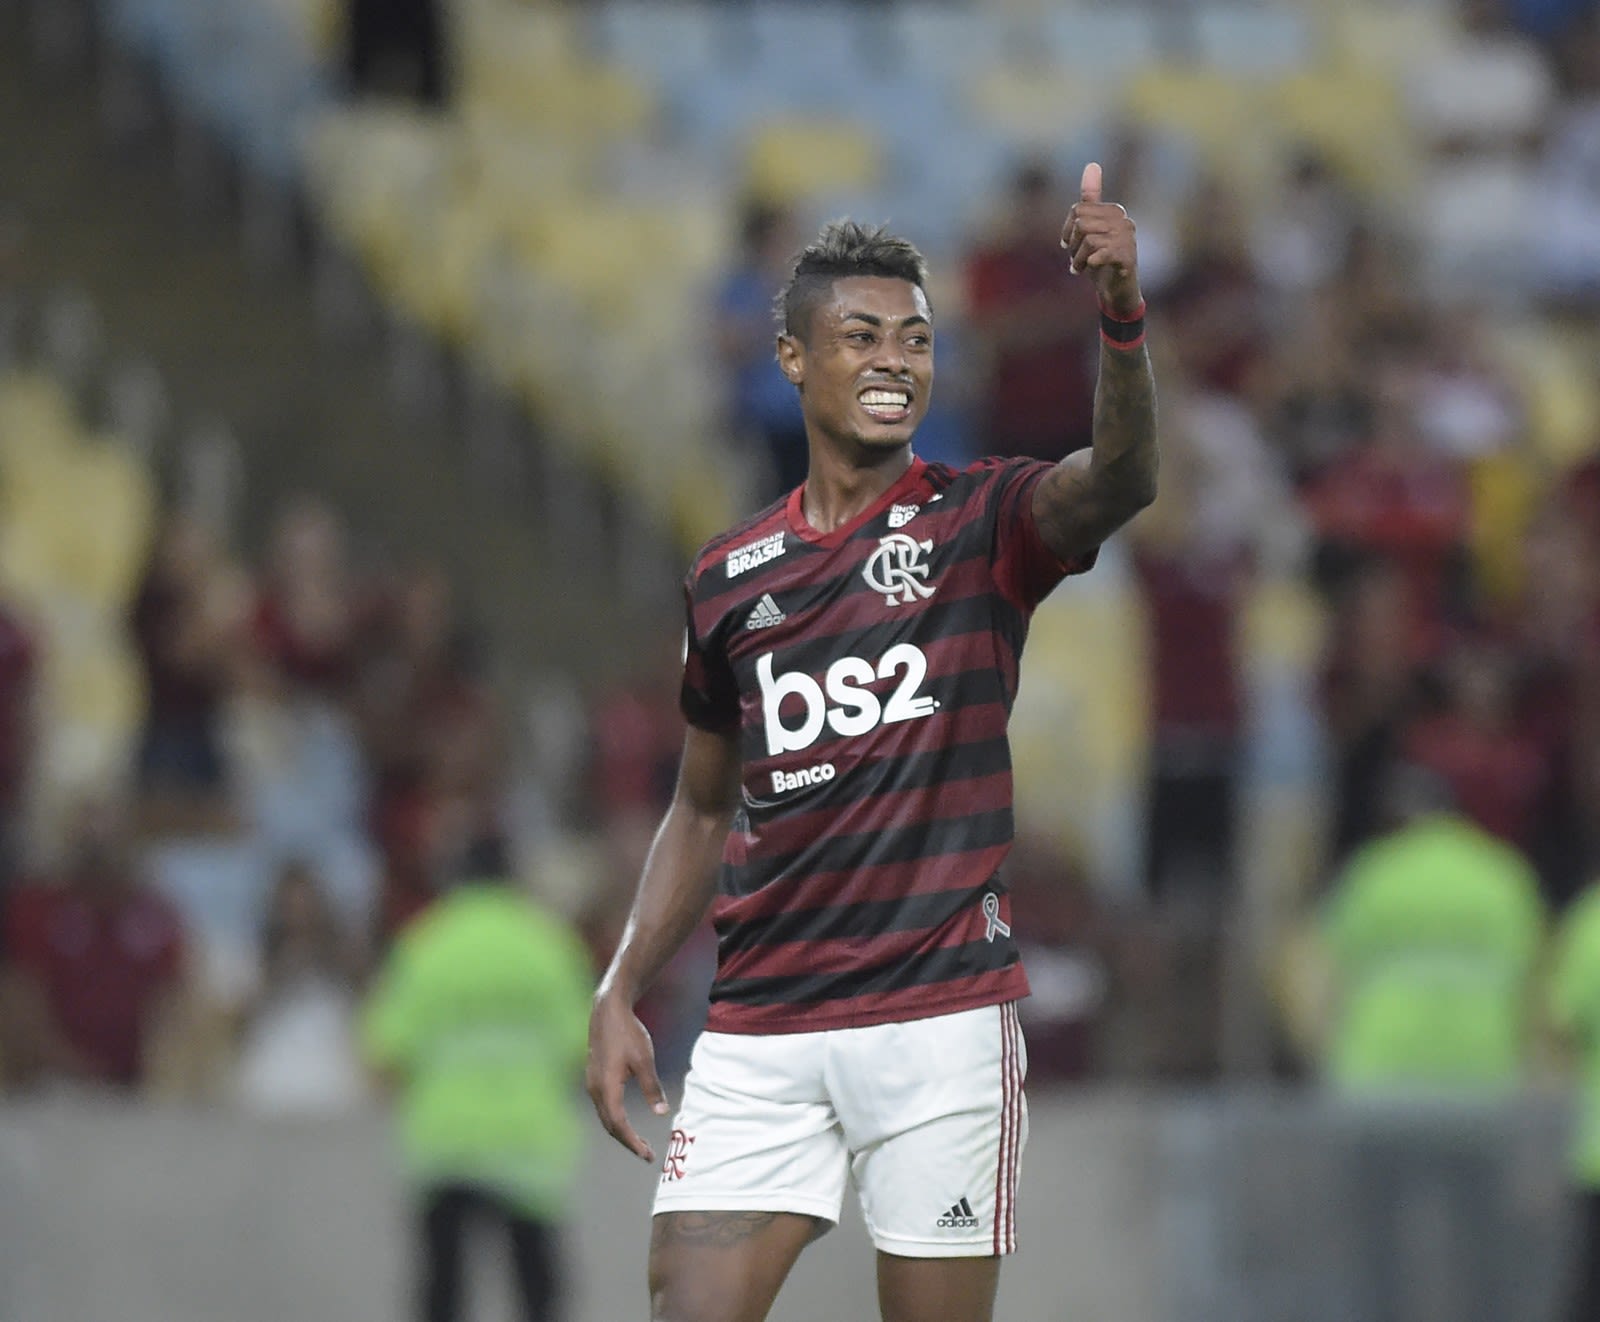 [COMENTE] Se você fosse o Tite, convocaria o Bruno Henrique para o lugar do Neymar?